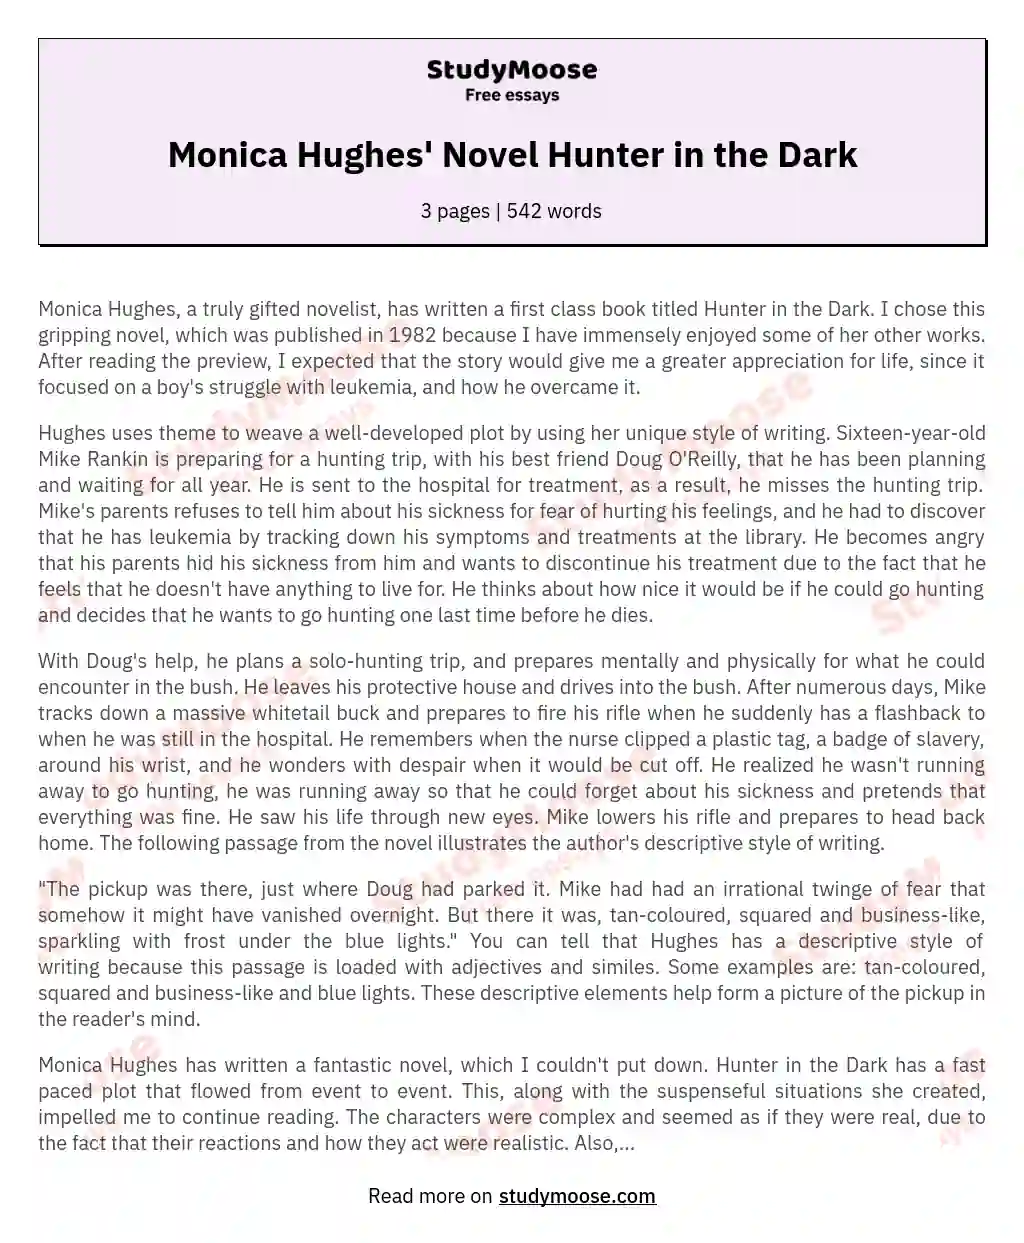 Monica Hughes' Novel Hunter in the Dark essay